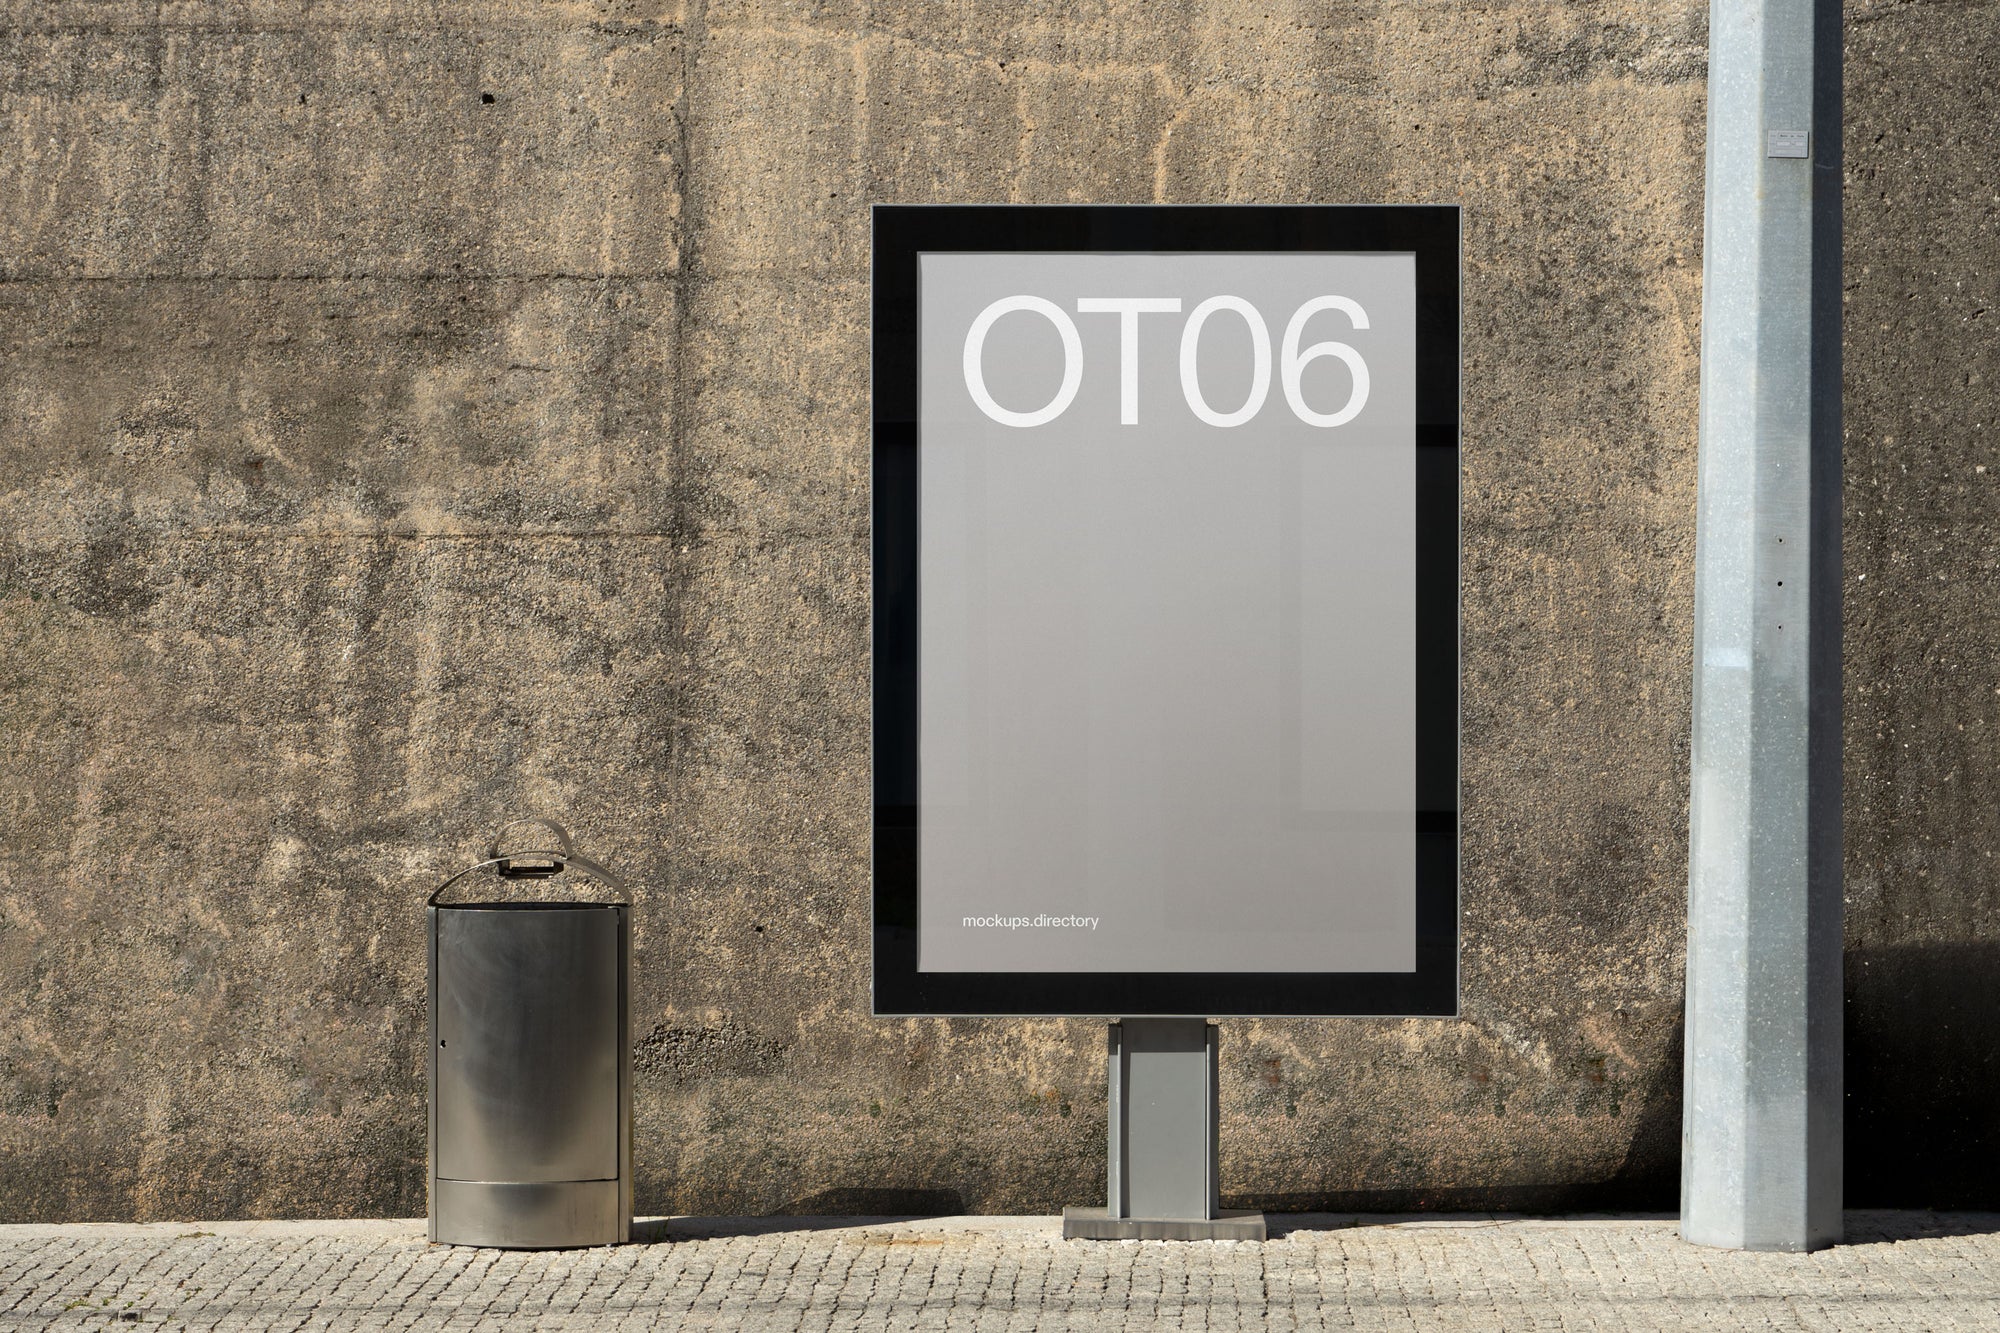 OT06 — Tram Stop